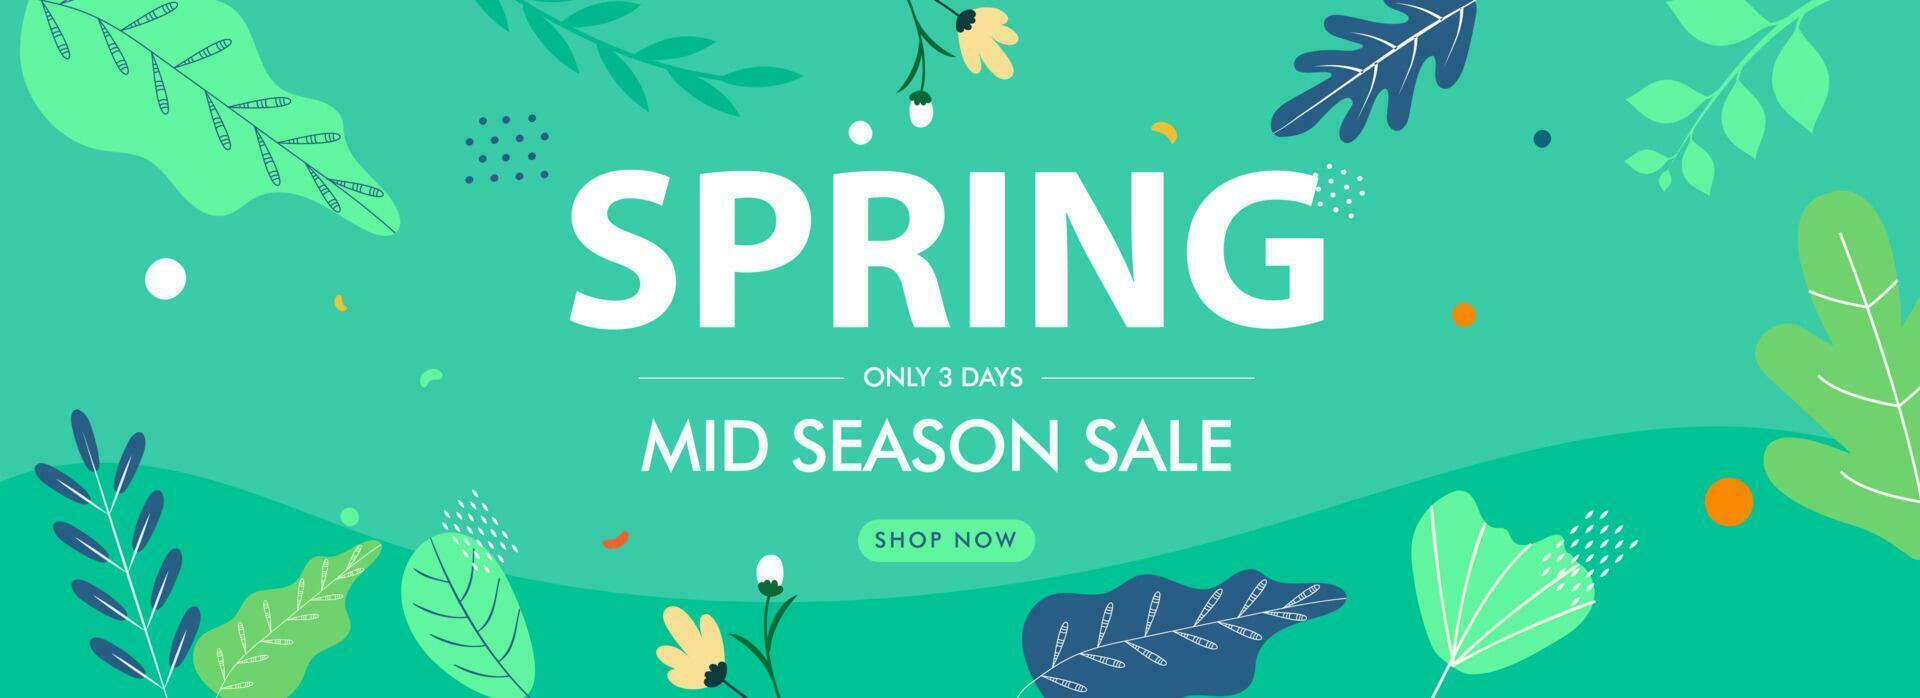 Frühling Mitte Jahreszeit Verkauf Header oder Banner Design mit Blumen und Blätter dekoriert auf Grün Hintergrund. vektor